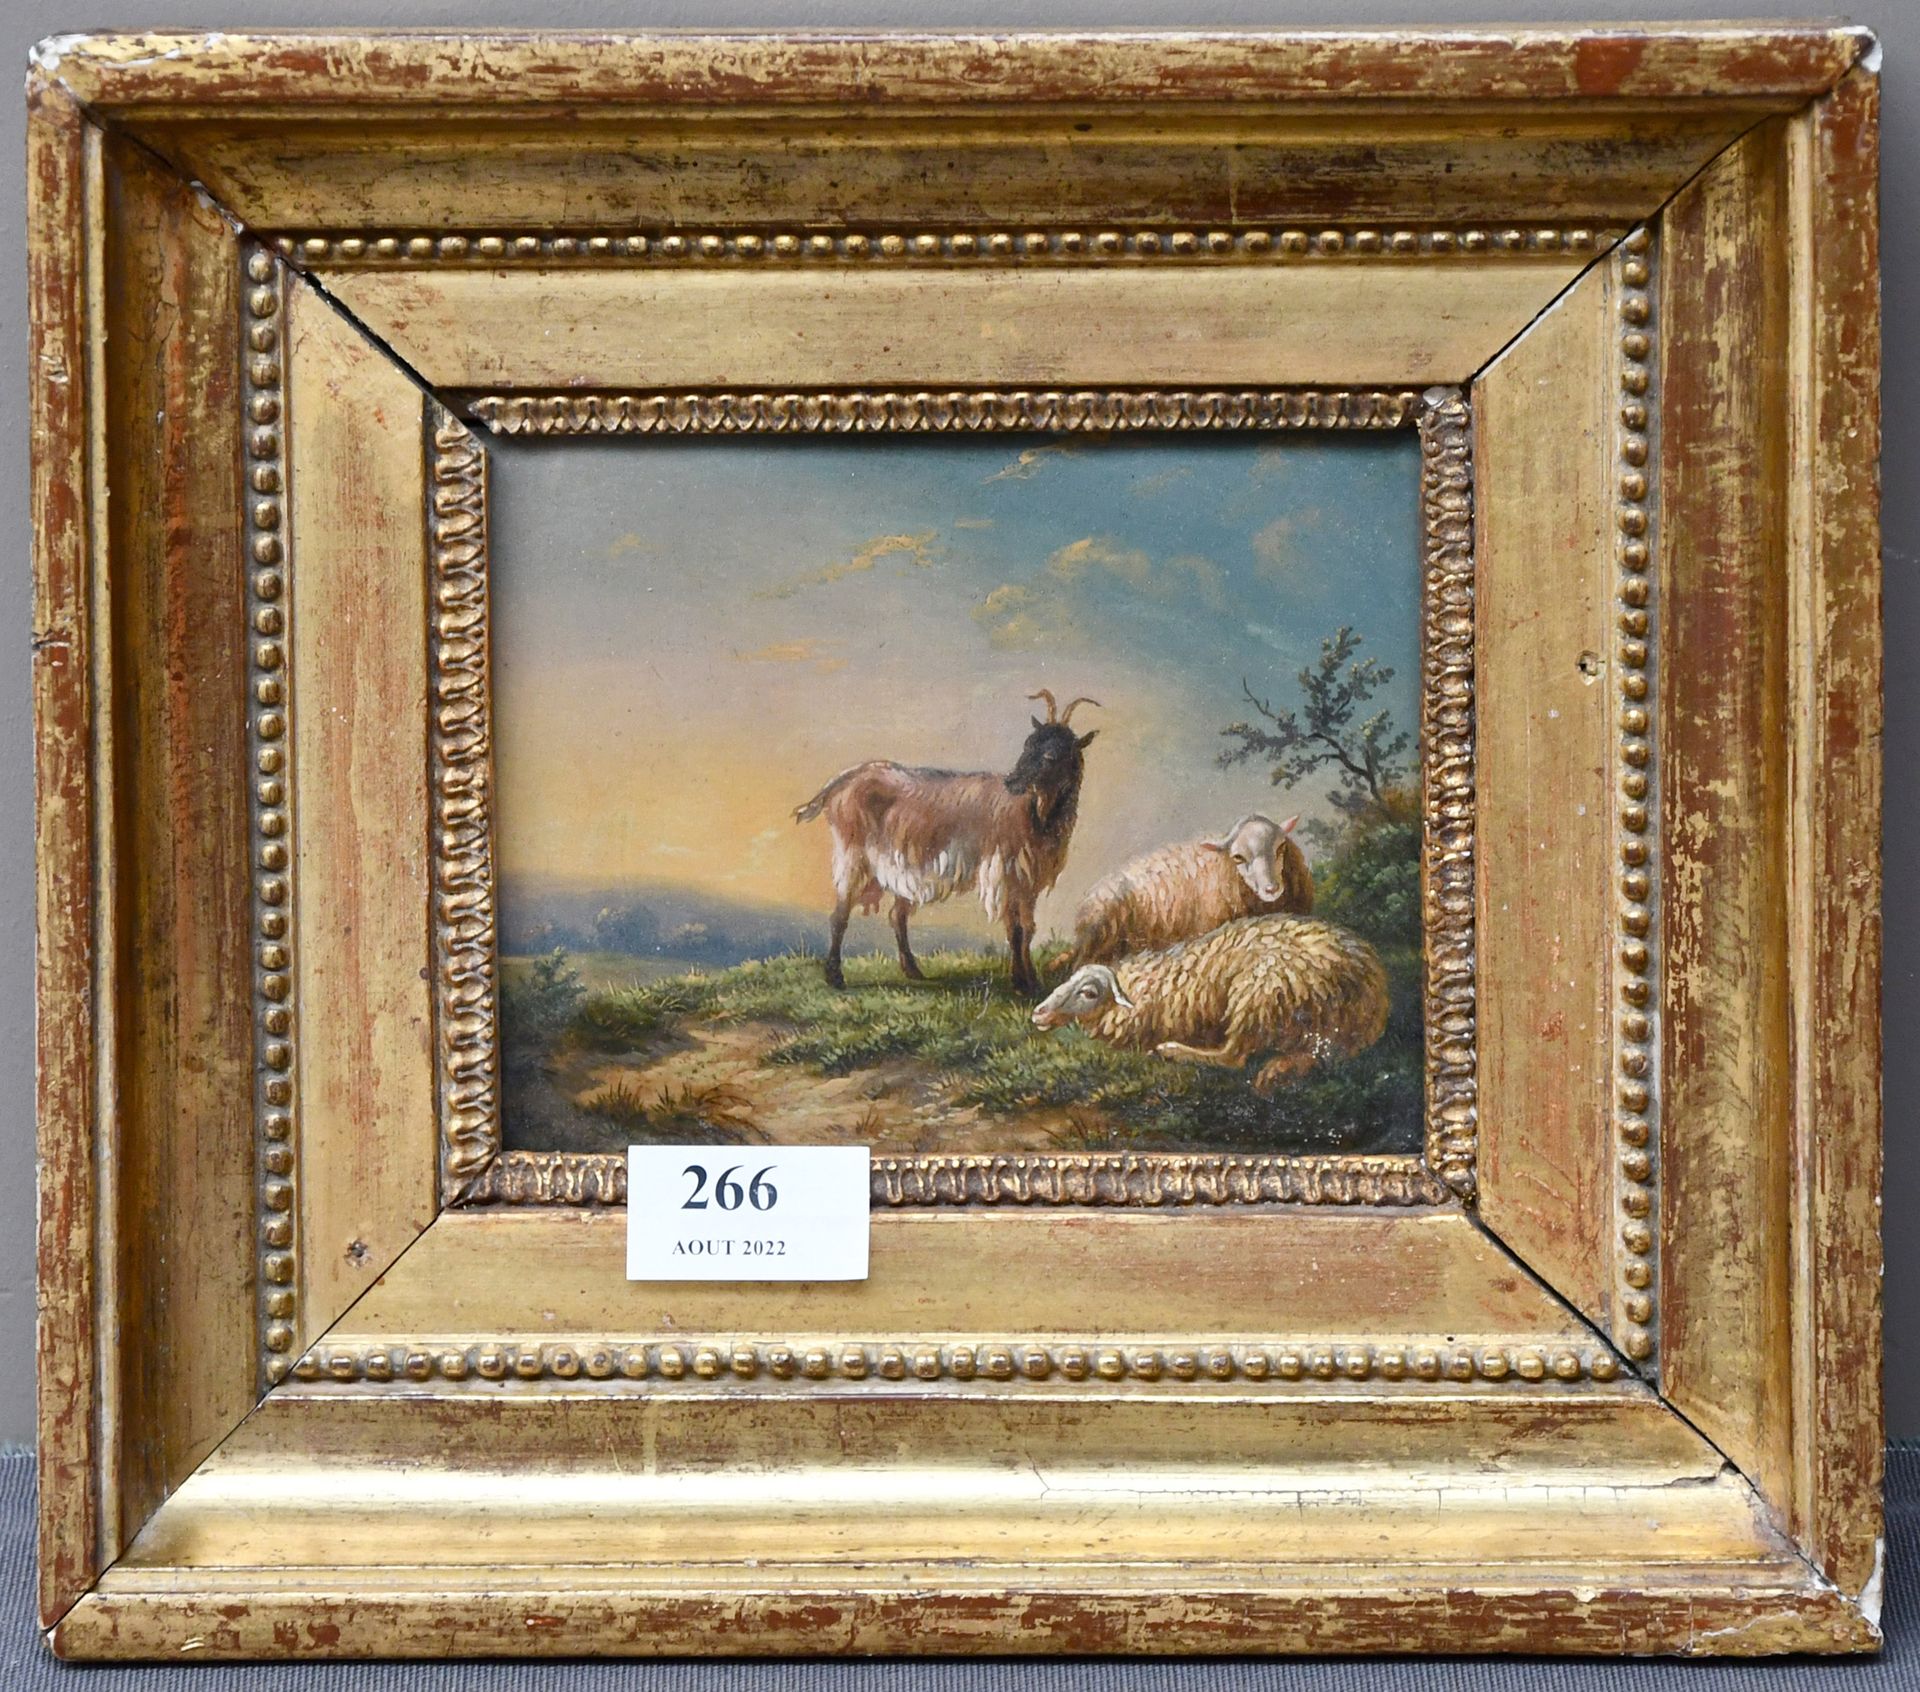 Null Gemälde

Öl auf Tafel: "Landszene, Ziege und Schafe".

Maße: 13 cm x 17 cm.